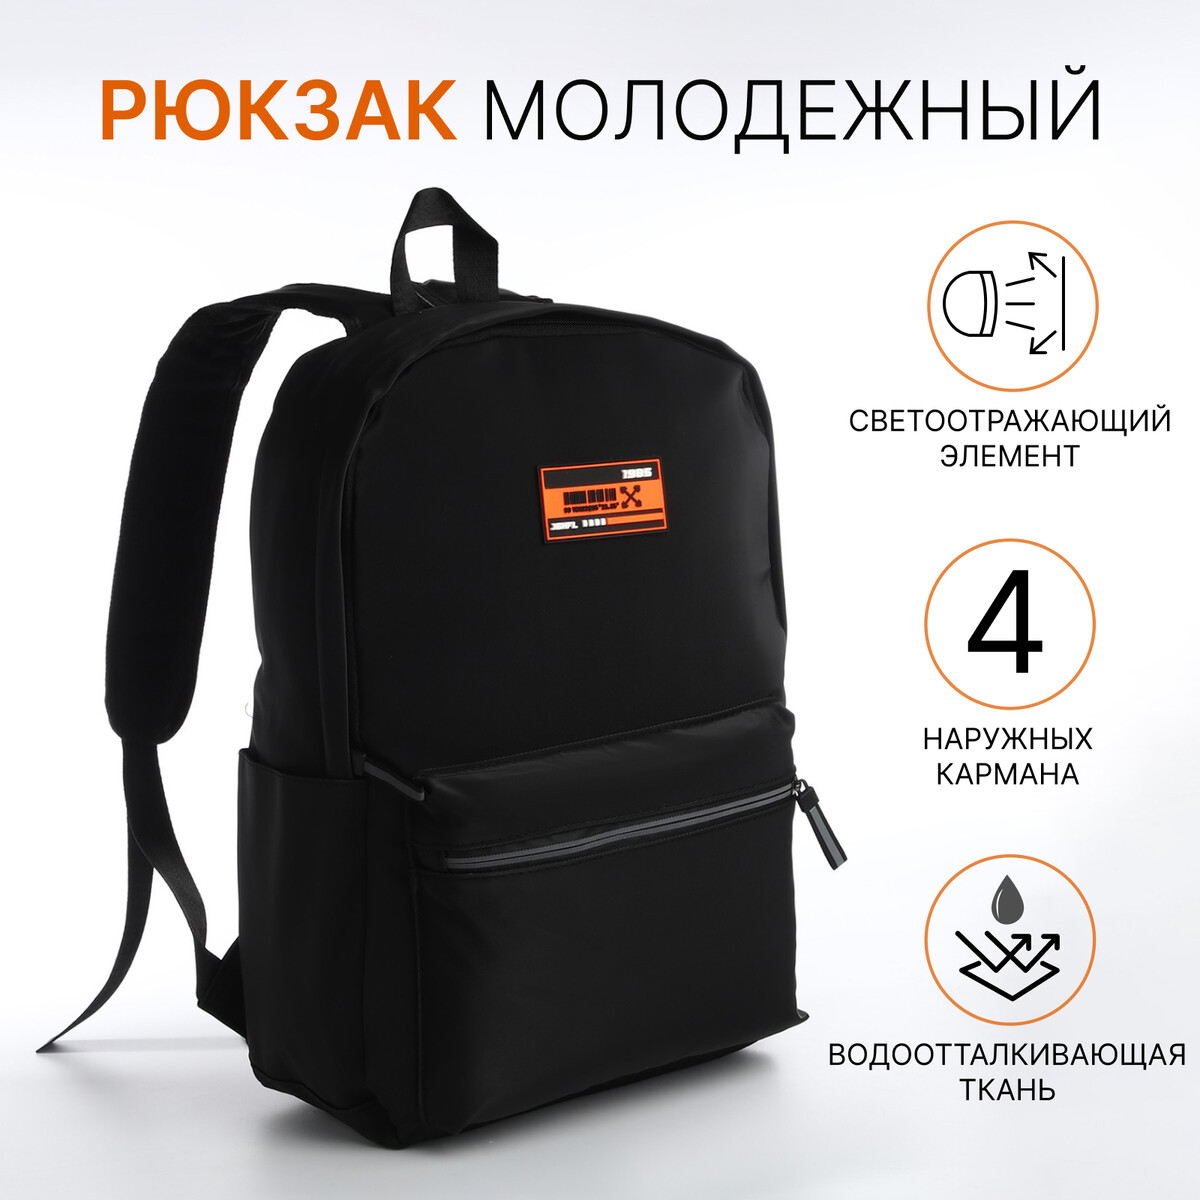 Рюкзак молодежный из текстиля на молнии, 4 кармана, цвет черный/оранжевый рюкзак молодежный из текстиля на молнии 4 кармана оранжевый